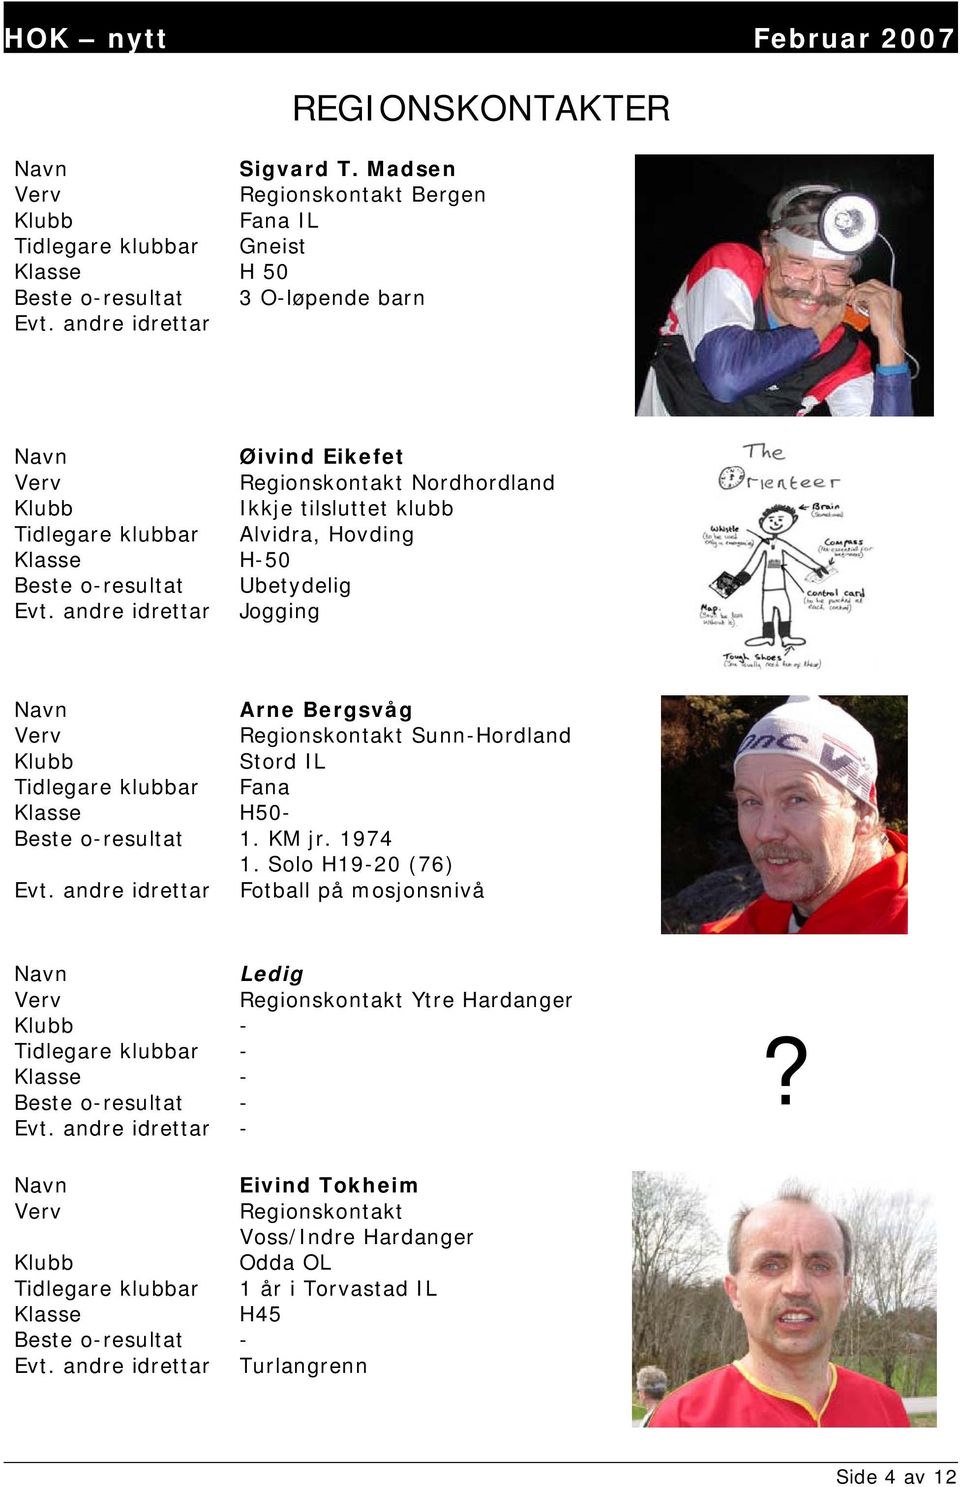 andre idrettar Jogging Arne Bergsvåg Regionskontakt Sunn-Hordland Stord IL Tidlegare klubbar Fana Klasse H50- Beste o-resultat 1. KM jr. 1974 1. Solo H19-20 (76) Evt.